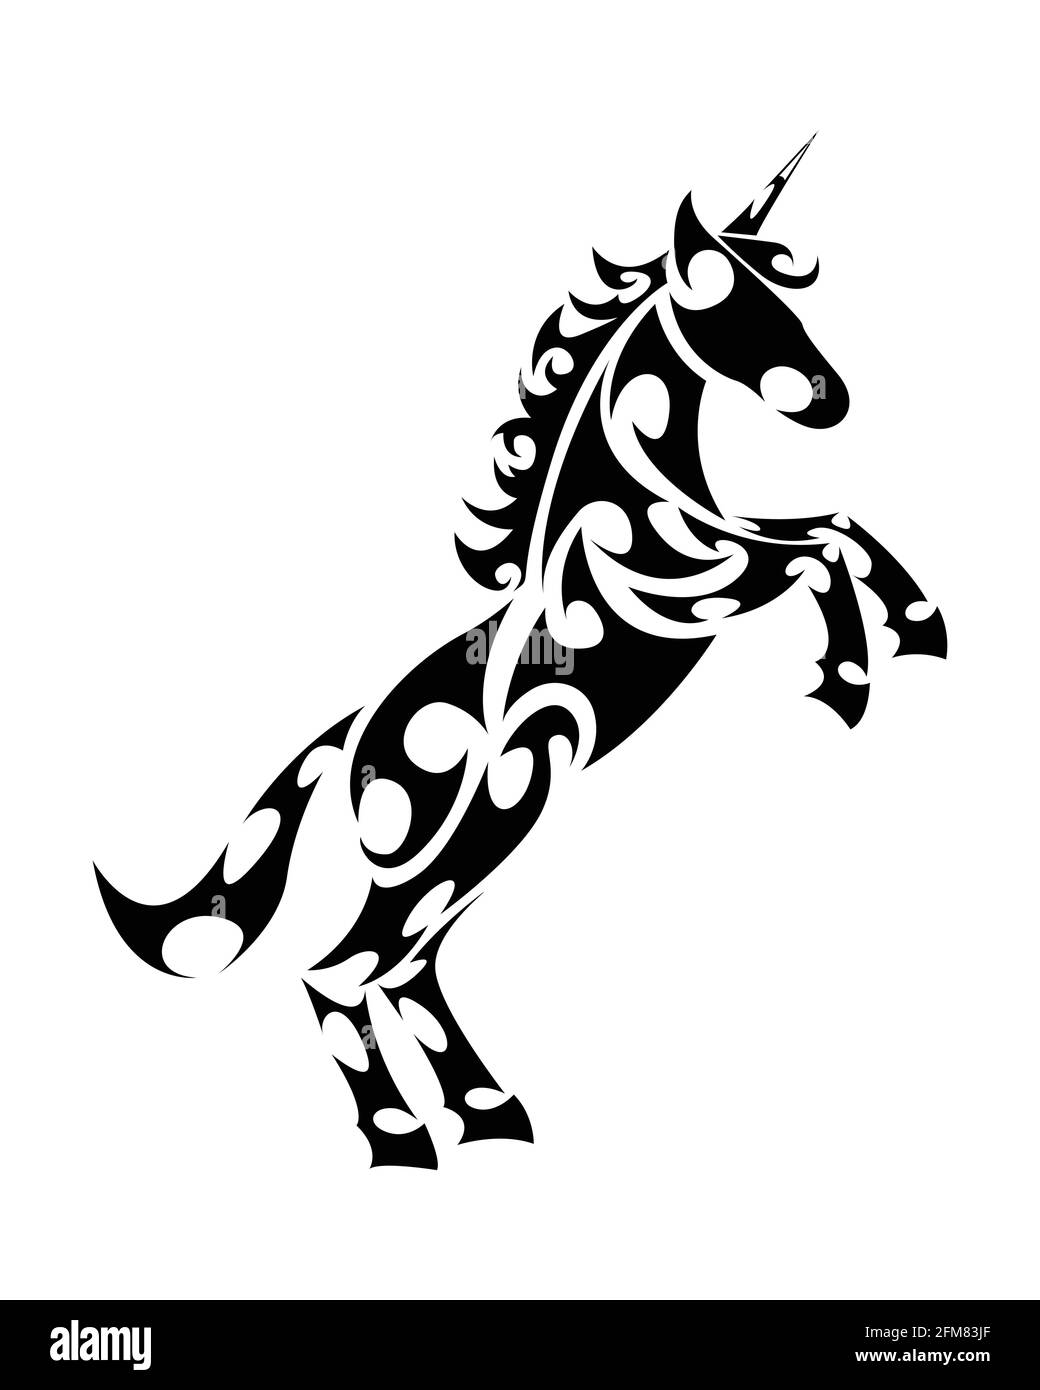 Vecteur de dessin au trait d'unicorn avec pattes avant relevées. Convient pour une utilisation comme décoration ou logo. Illustration de Vecteur